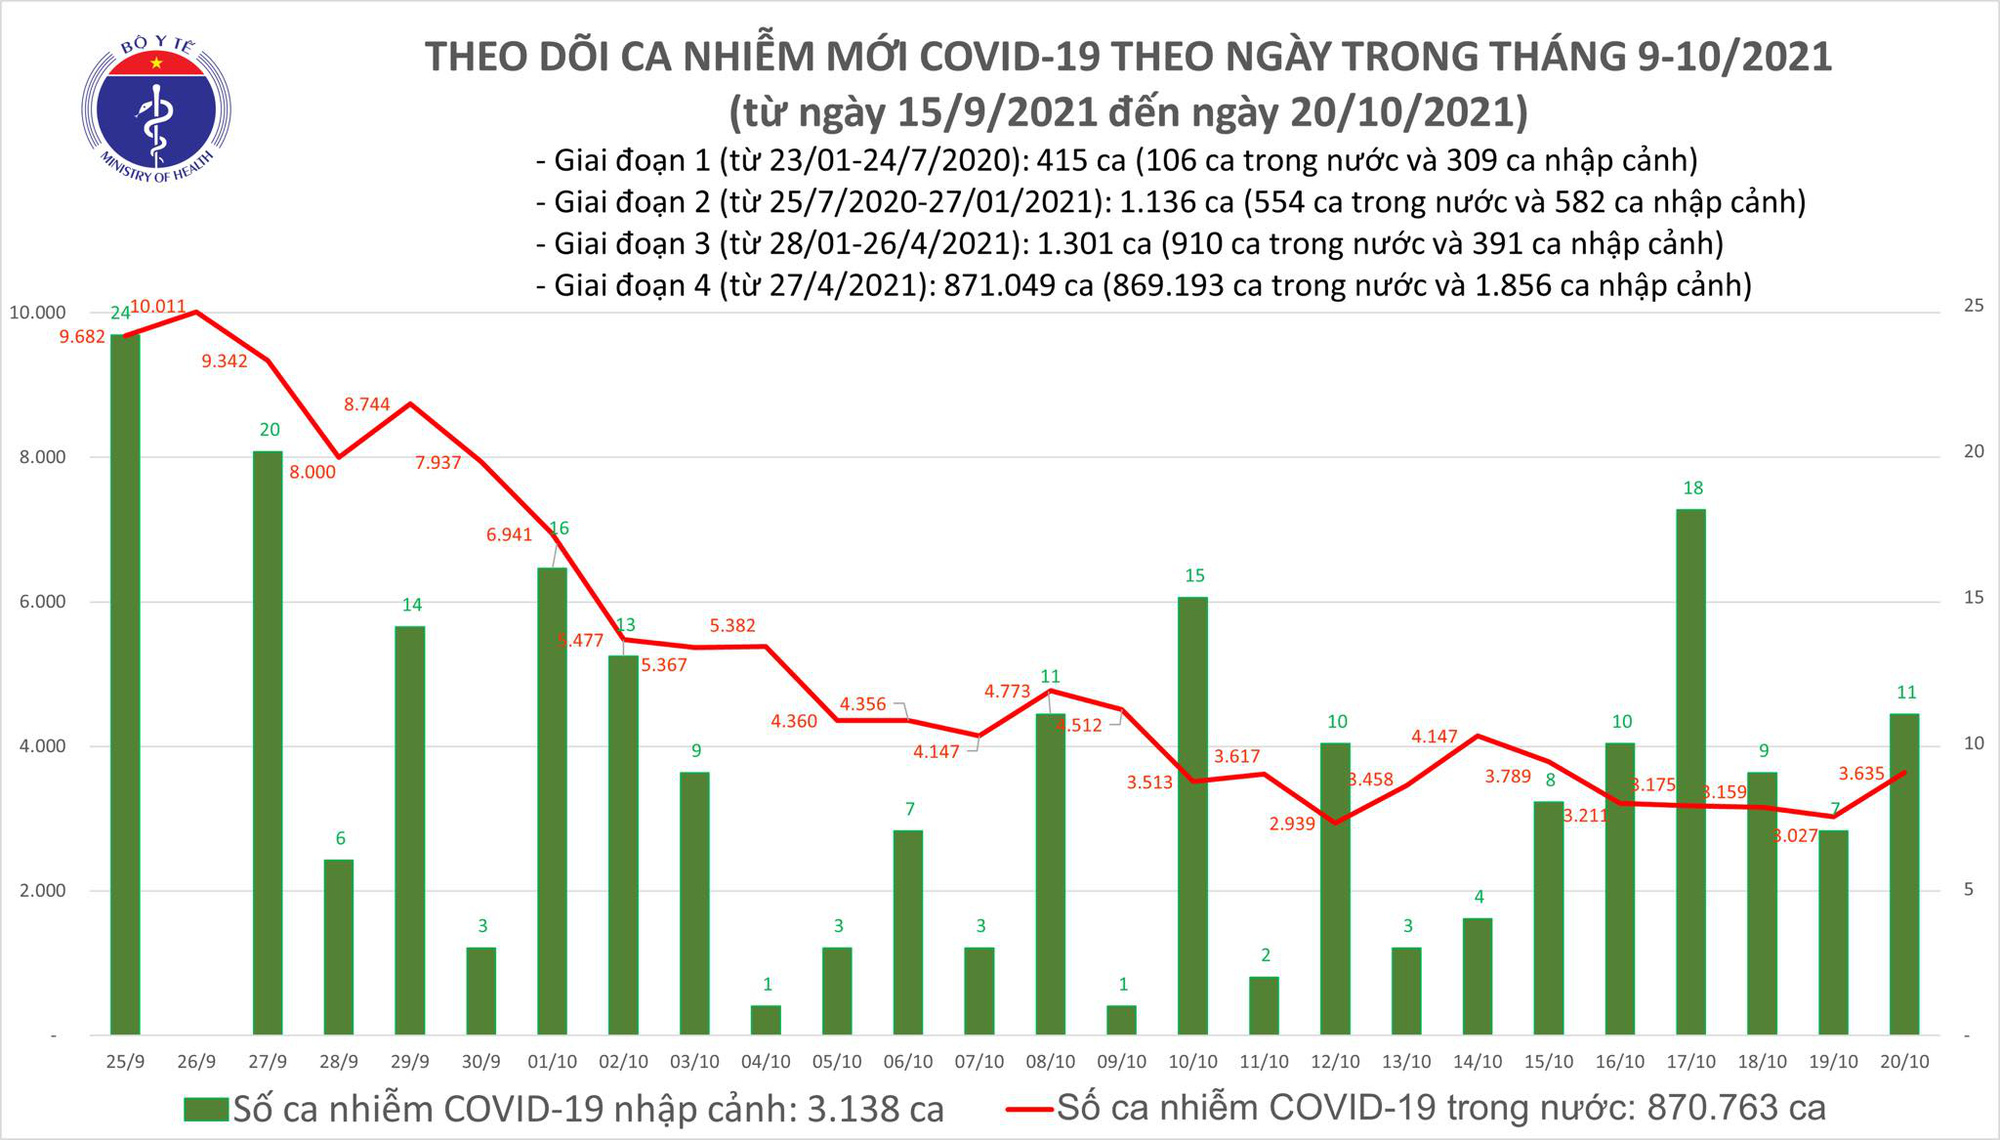 Ngày 20/10: Có 3.646 ca mắc COVID-19, riêng TP HCM 1.347 ca; có 1.737 bệnh nhân khỏi - Ảnh 1.